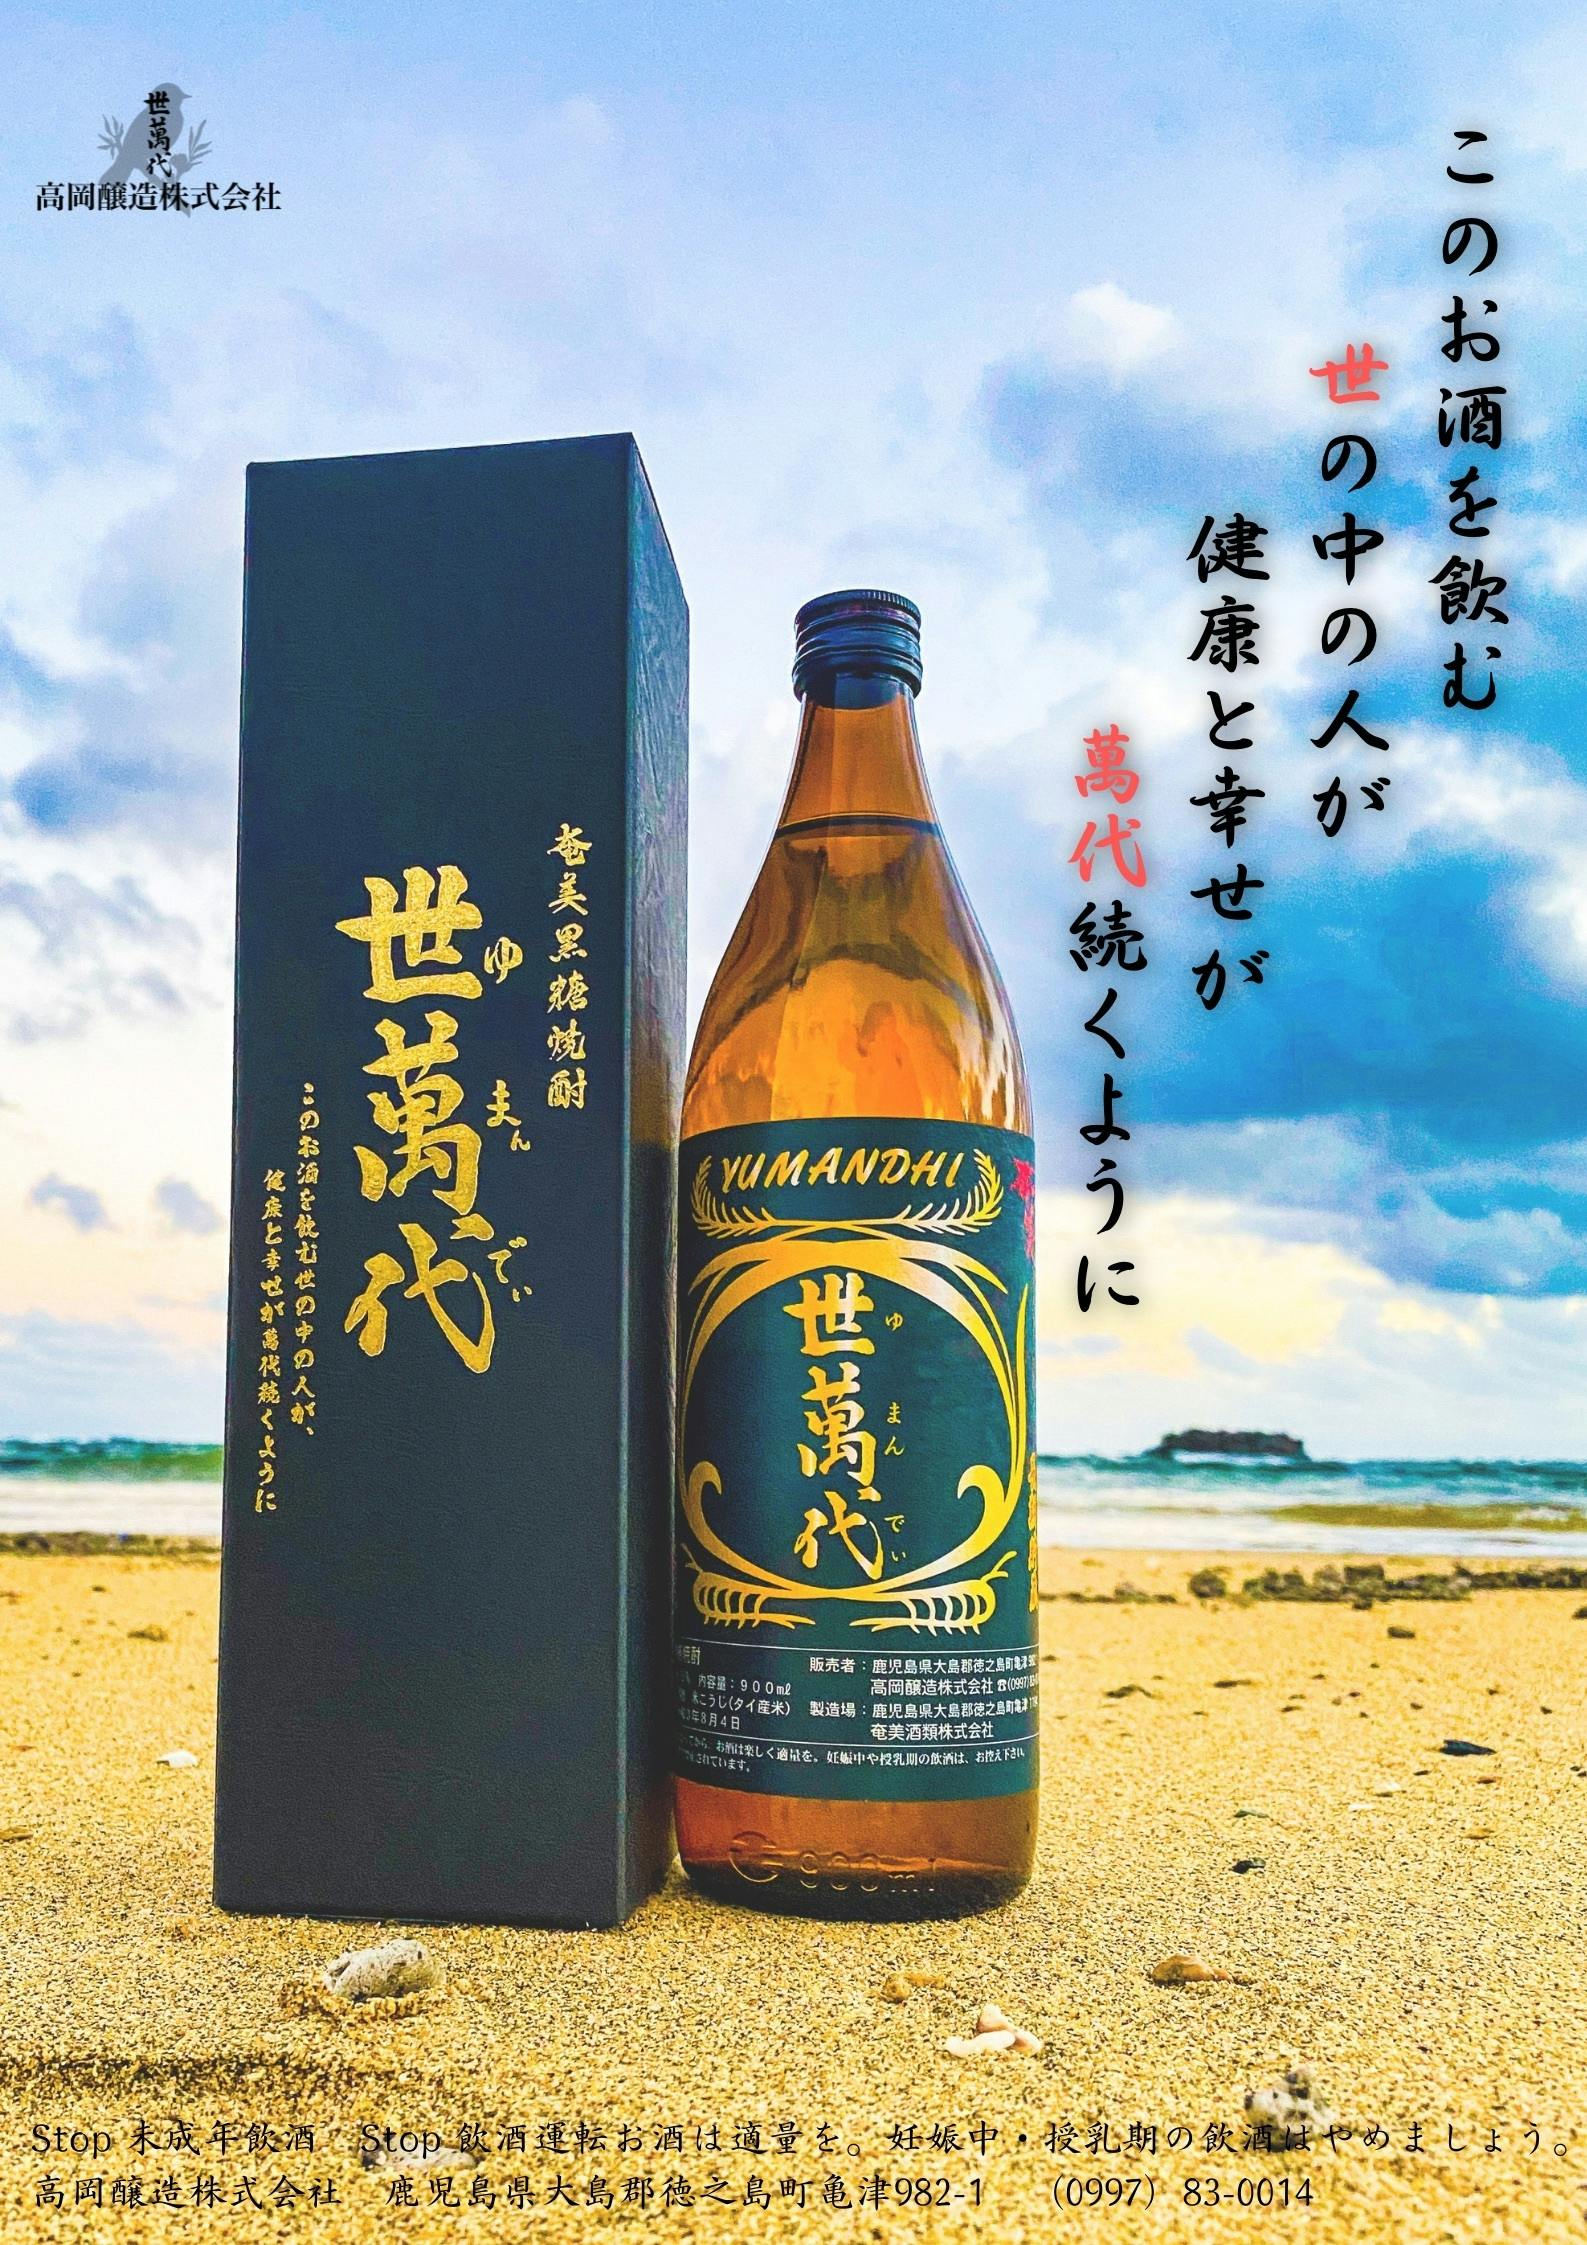 日本初の国産ラム酒「ルリカケス」で古酒造り、奄美徳之島の発展に寄与